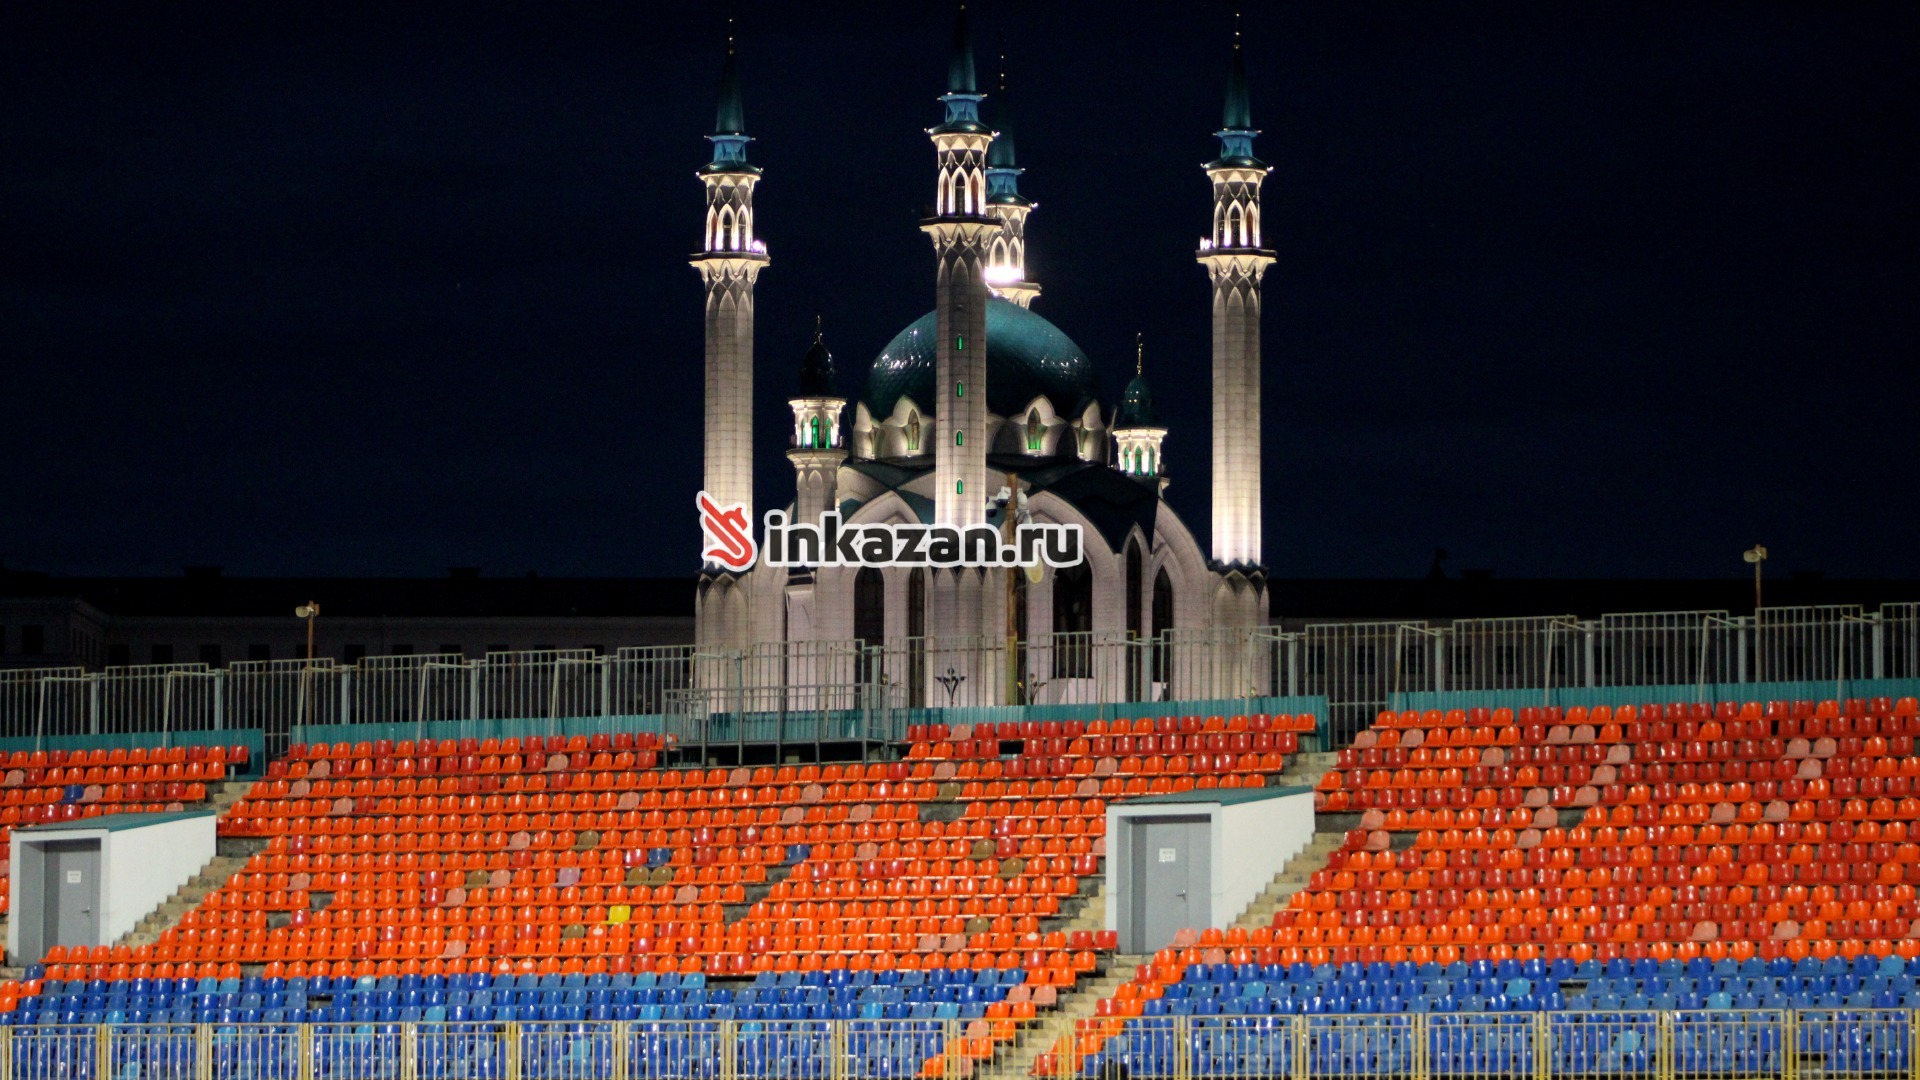 Как ржавеет и разрушается Центральный стадион Казани — фоторепортаж